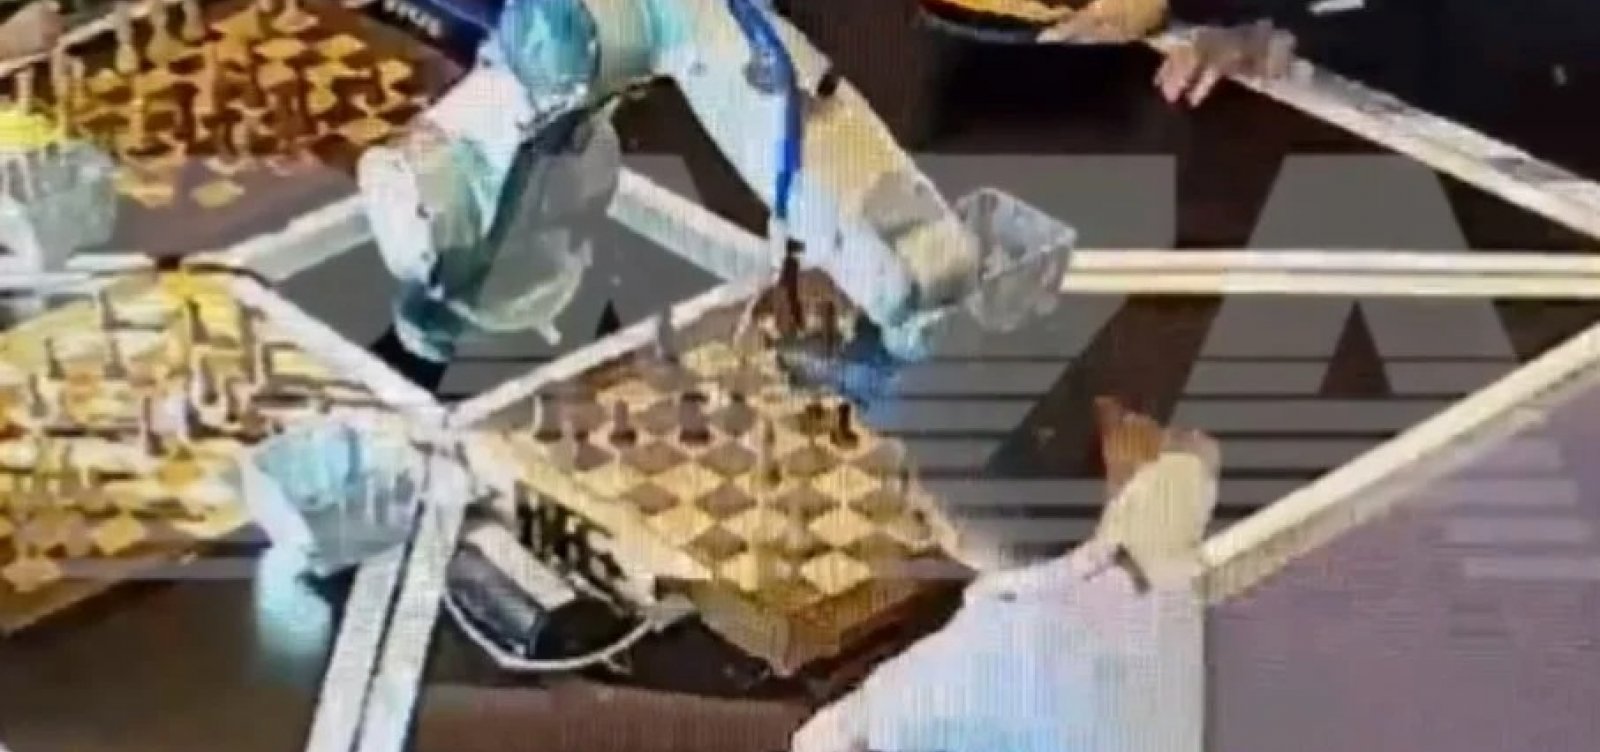 Mestre de xadrez que foi pego colando é expulso de evento por usar